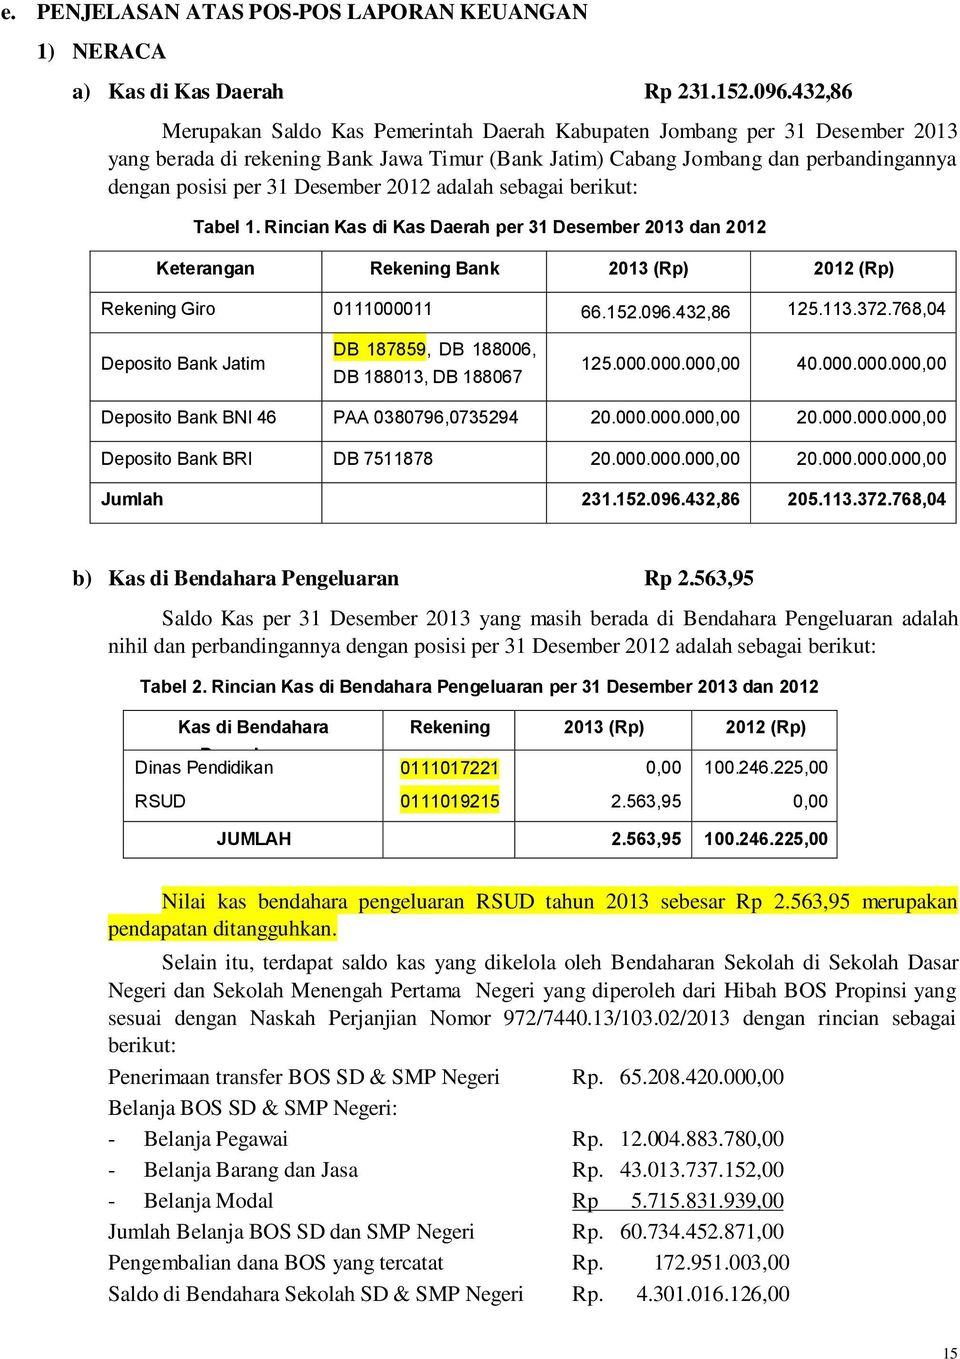 Desember 2012 adalah sebagai berikut: Tabel 1. Rincian Kas di Kas Daerah per 31 Desember 2013 dan 2012 Keterangan Rekening Bank 2013 (Rp) 2012 (Rp) Rekening Giro 0111000011 66.152.096.432,86 125.113.